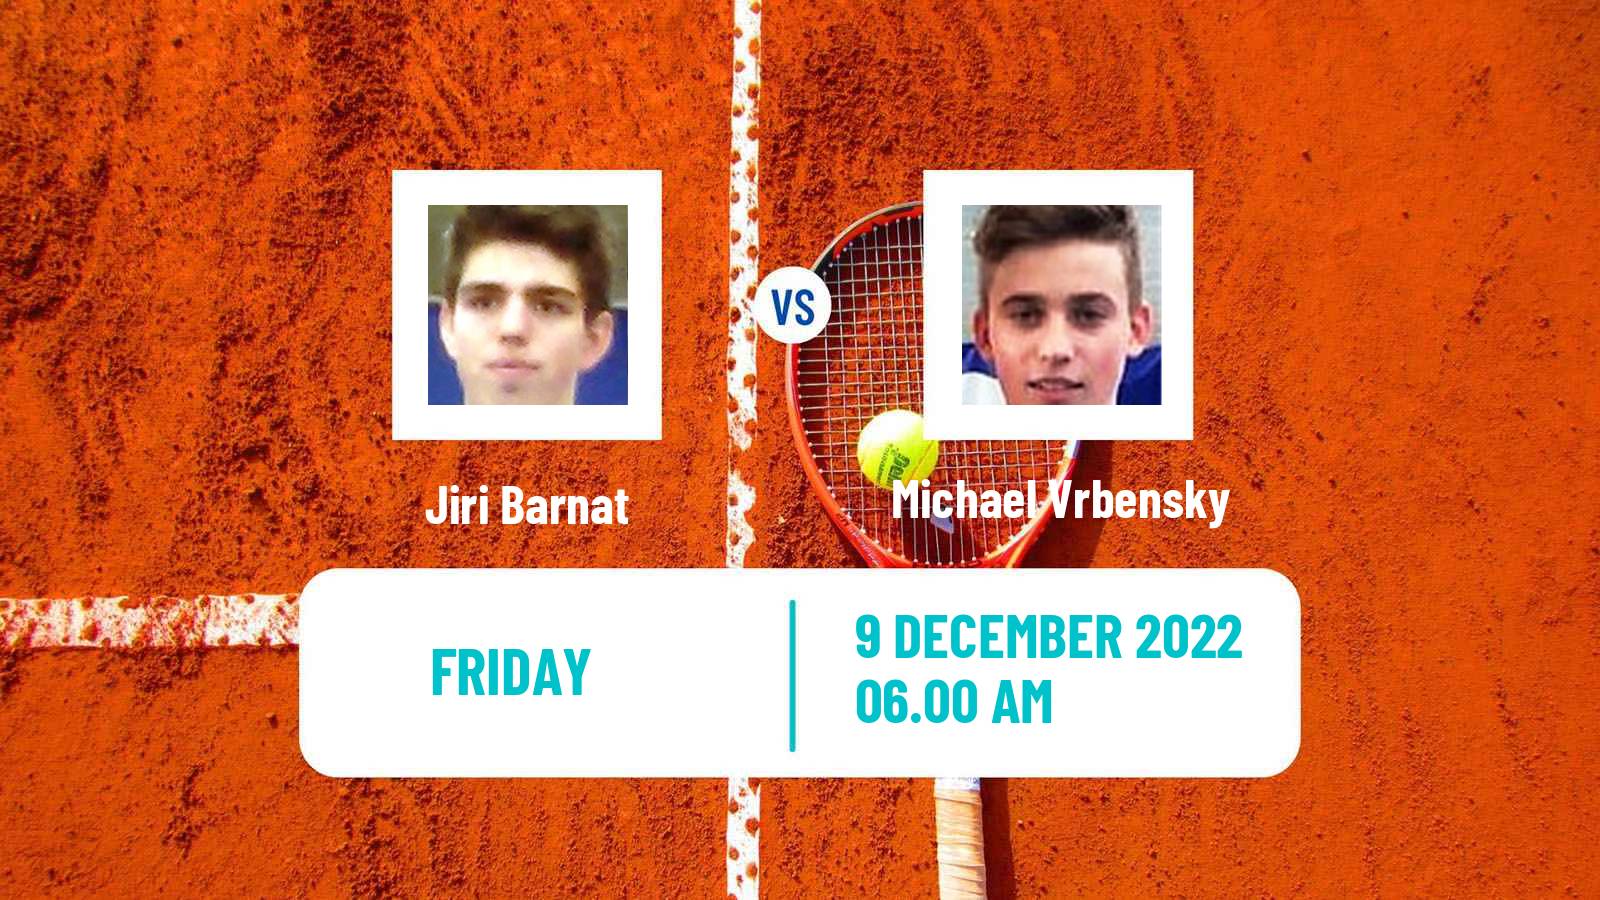 Tennis ITF Tournaments Jiri Barnat - Michael Vrbensky